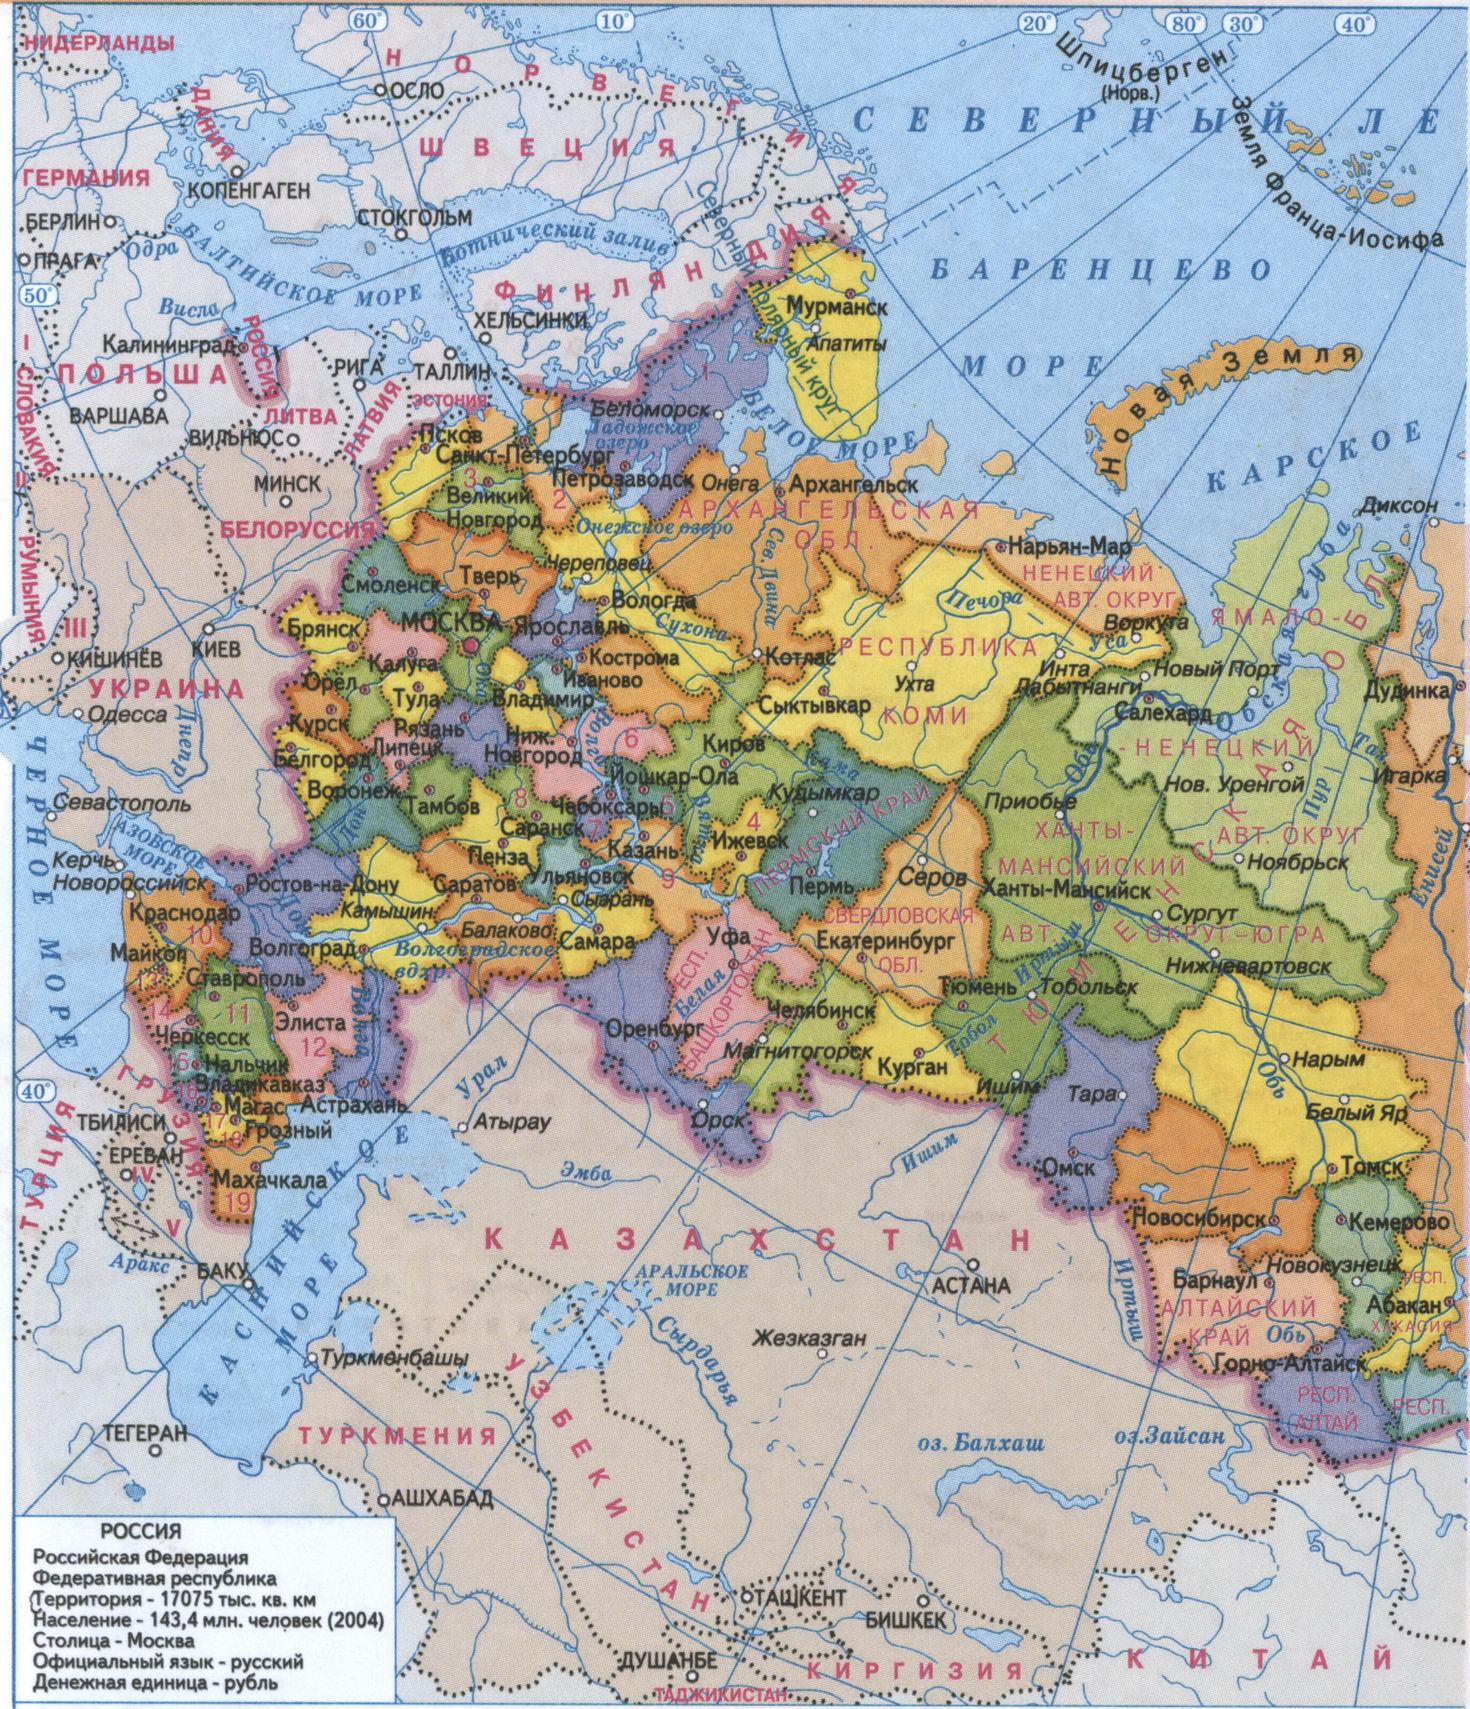 Какая область граничит с Московской областью?